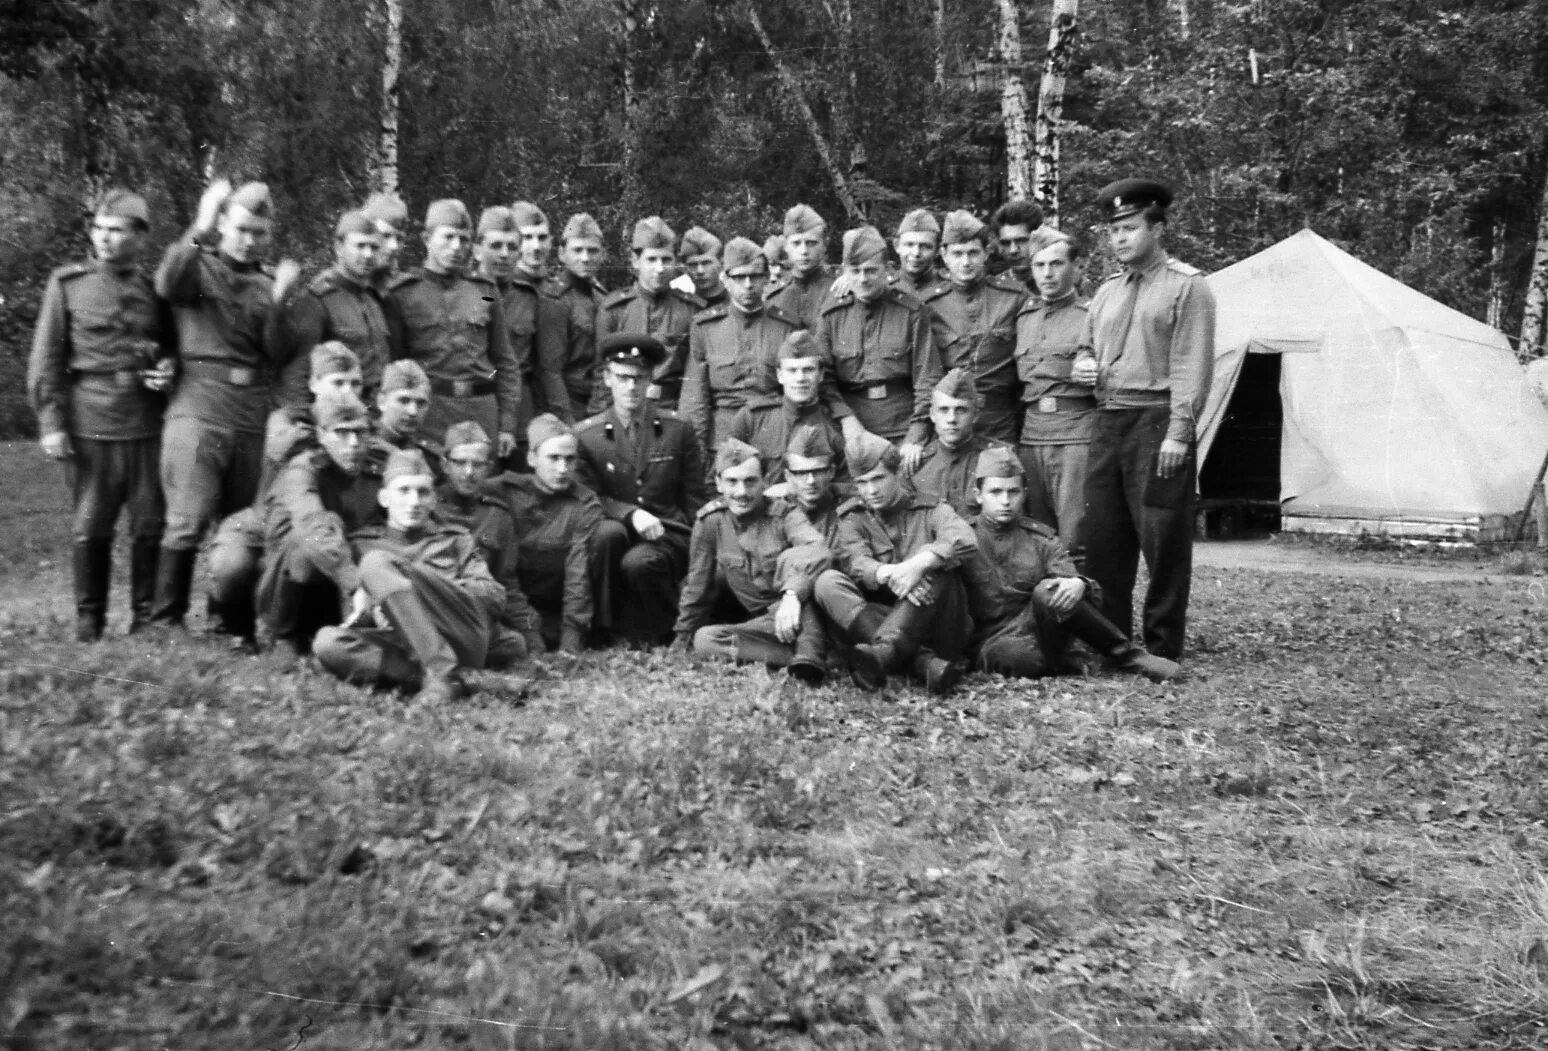 Three camps. Гороховецкие лагеря в 1941 году. Чебаркульский военный лагерь 1941. Бершетский военный лагерь 1941. Гороховецкие лагеря в 1940 году.